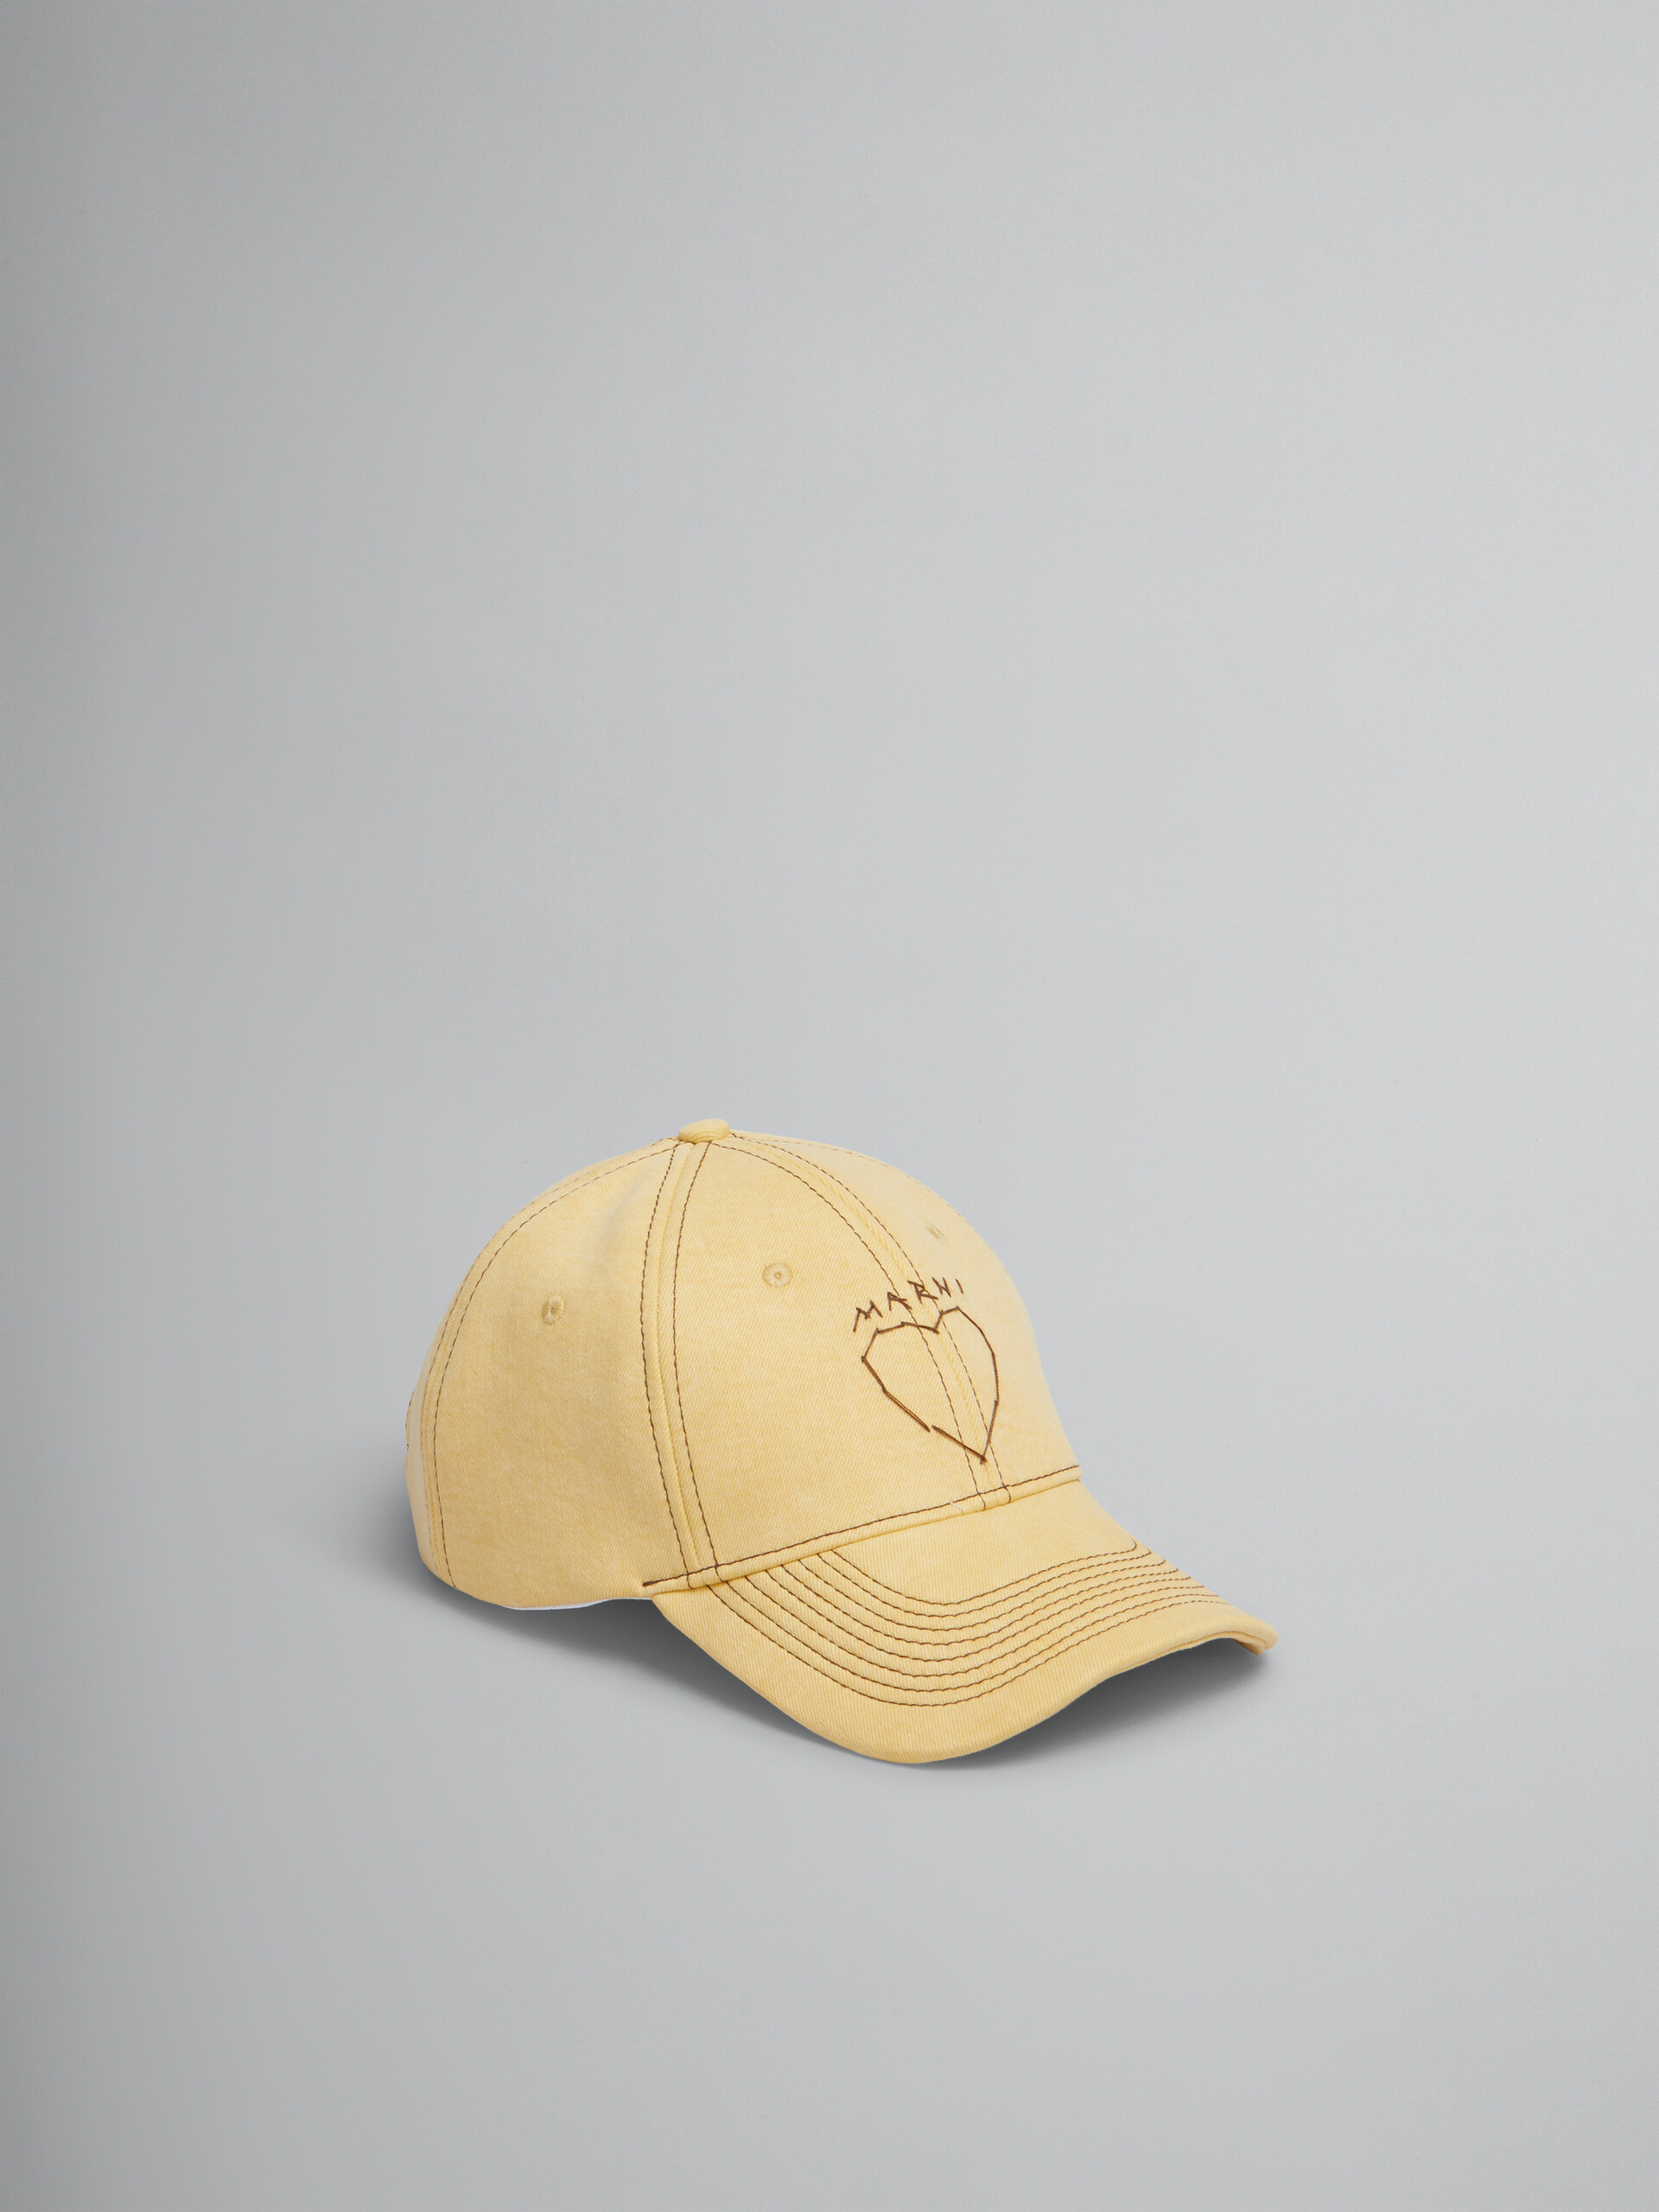 마르니 멘딩 디테일 옐로우 오가닉 데님 베이스볼 캡 - 모자 - Image 1